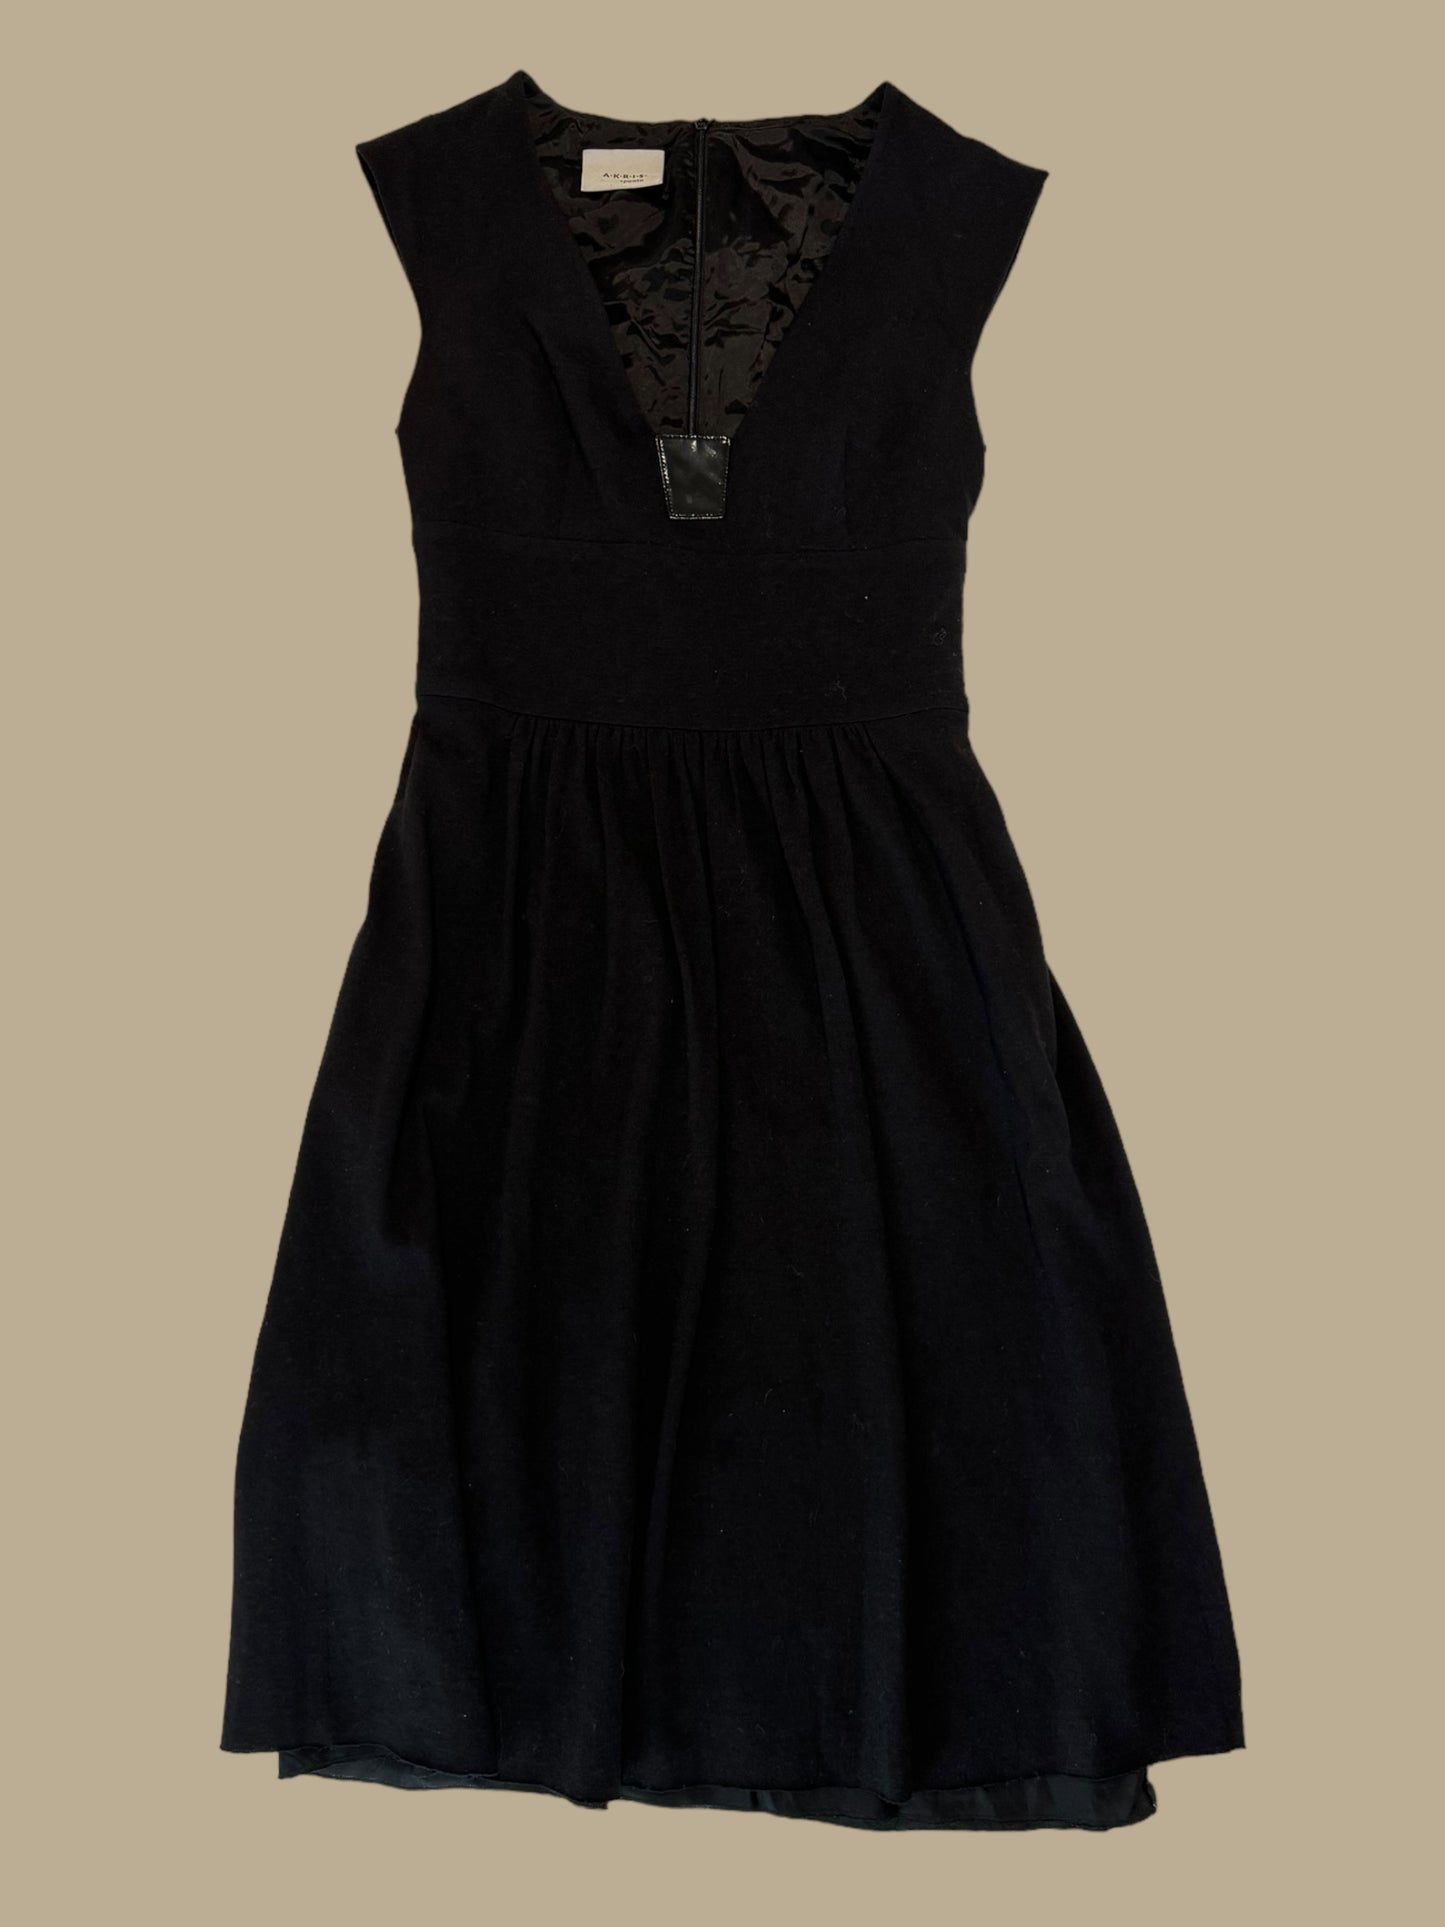 AKRIS PUNTO black wool dress size small